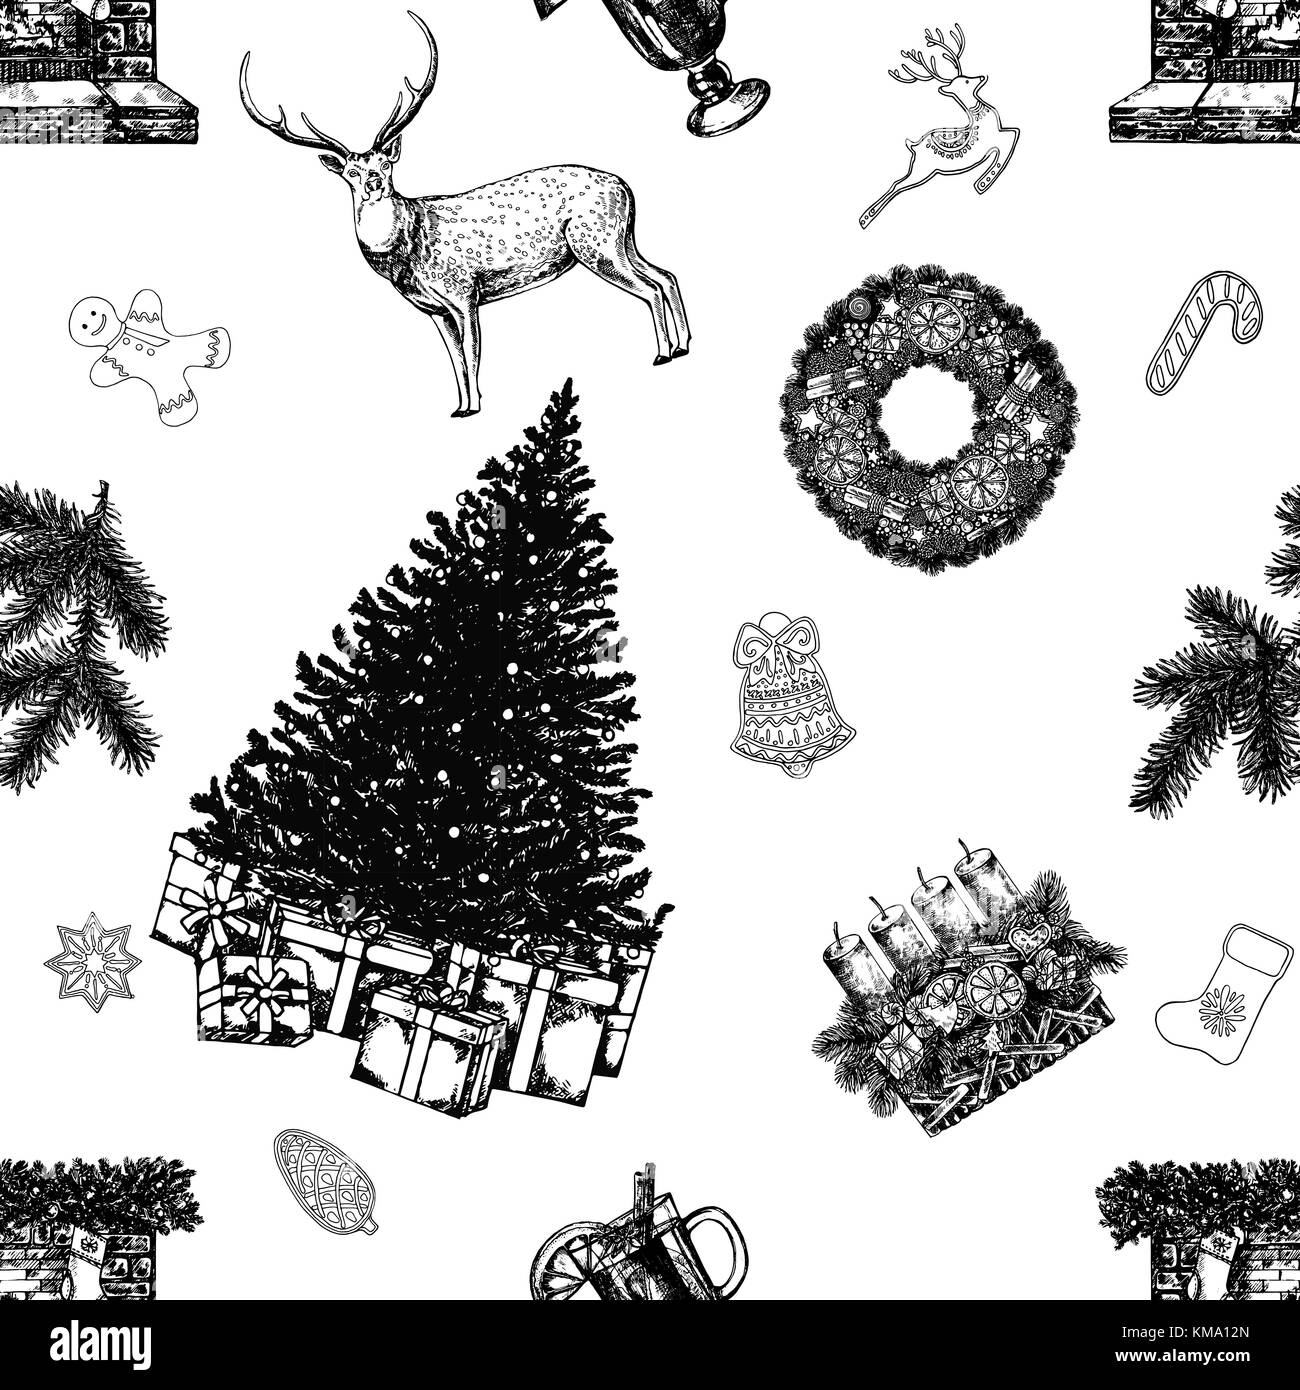 Nahtlose Muster von Hand gezeichnete Skizze stil Weihnachten und neues Jahr thematische Objekte und Elemente. Vector Illustration auf weißem Hintergrund. Stock Vektor